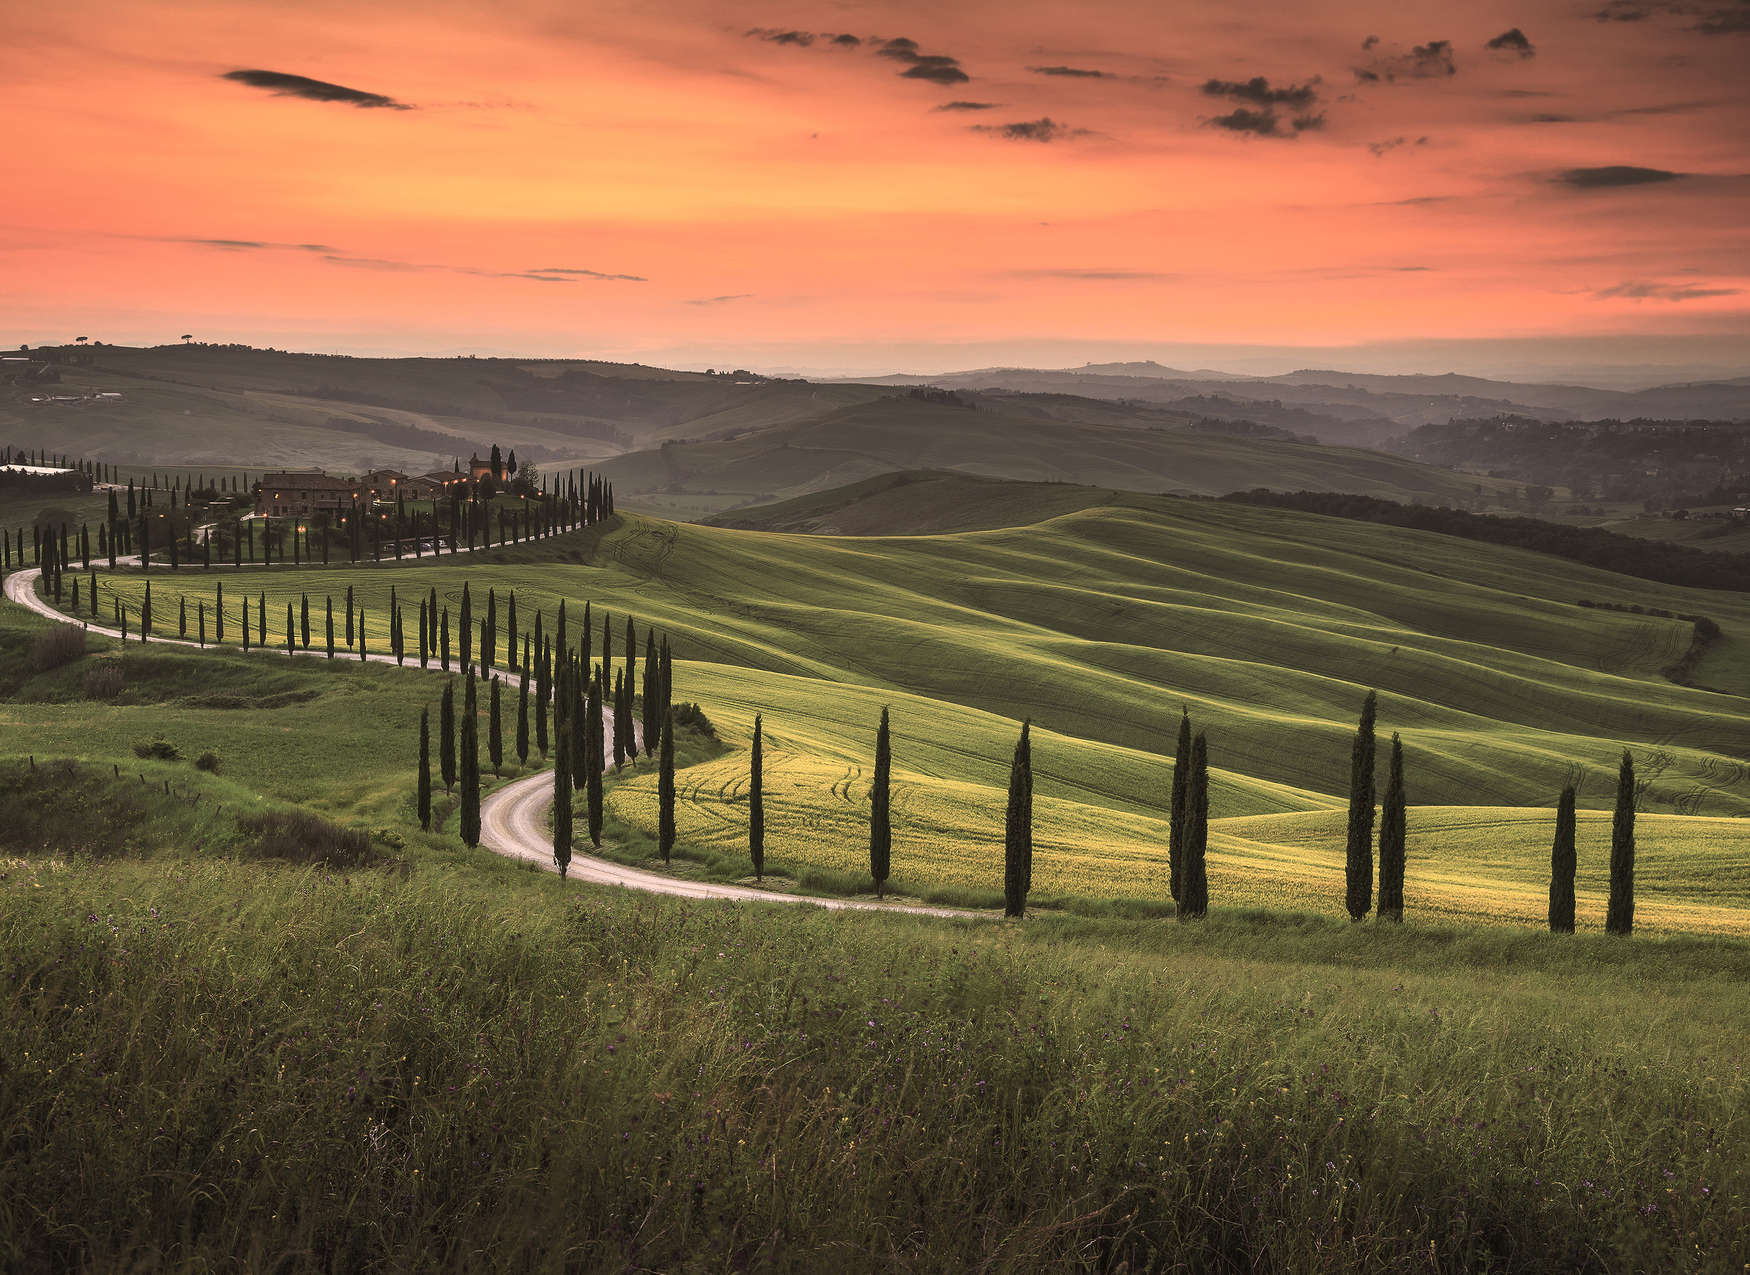             Toscaans landschap bij schemering - groen, oranje
        